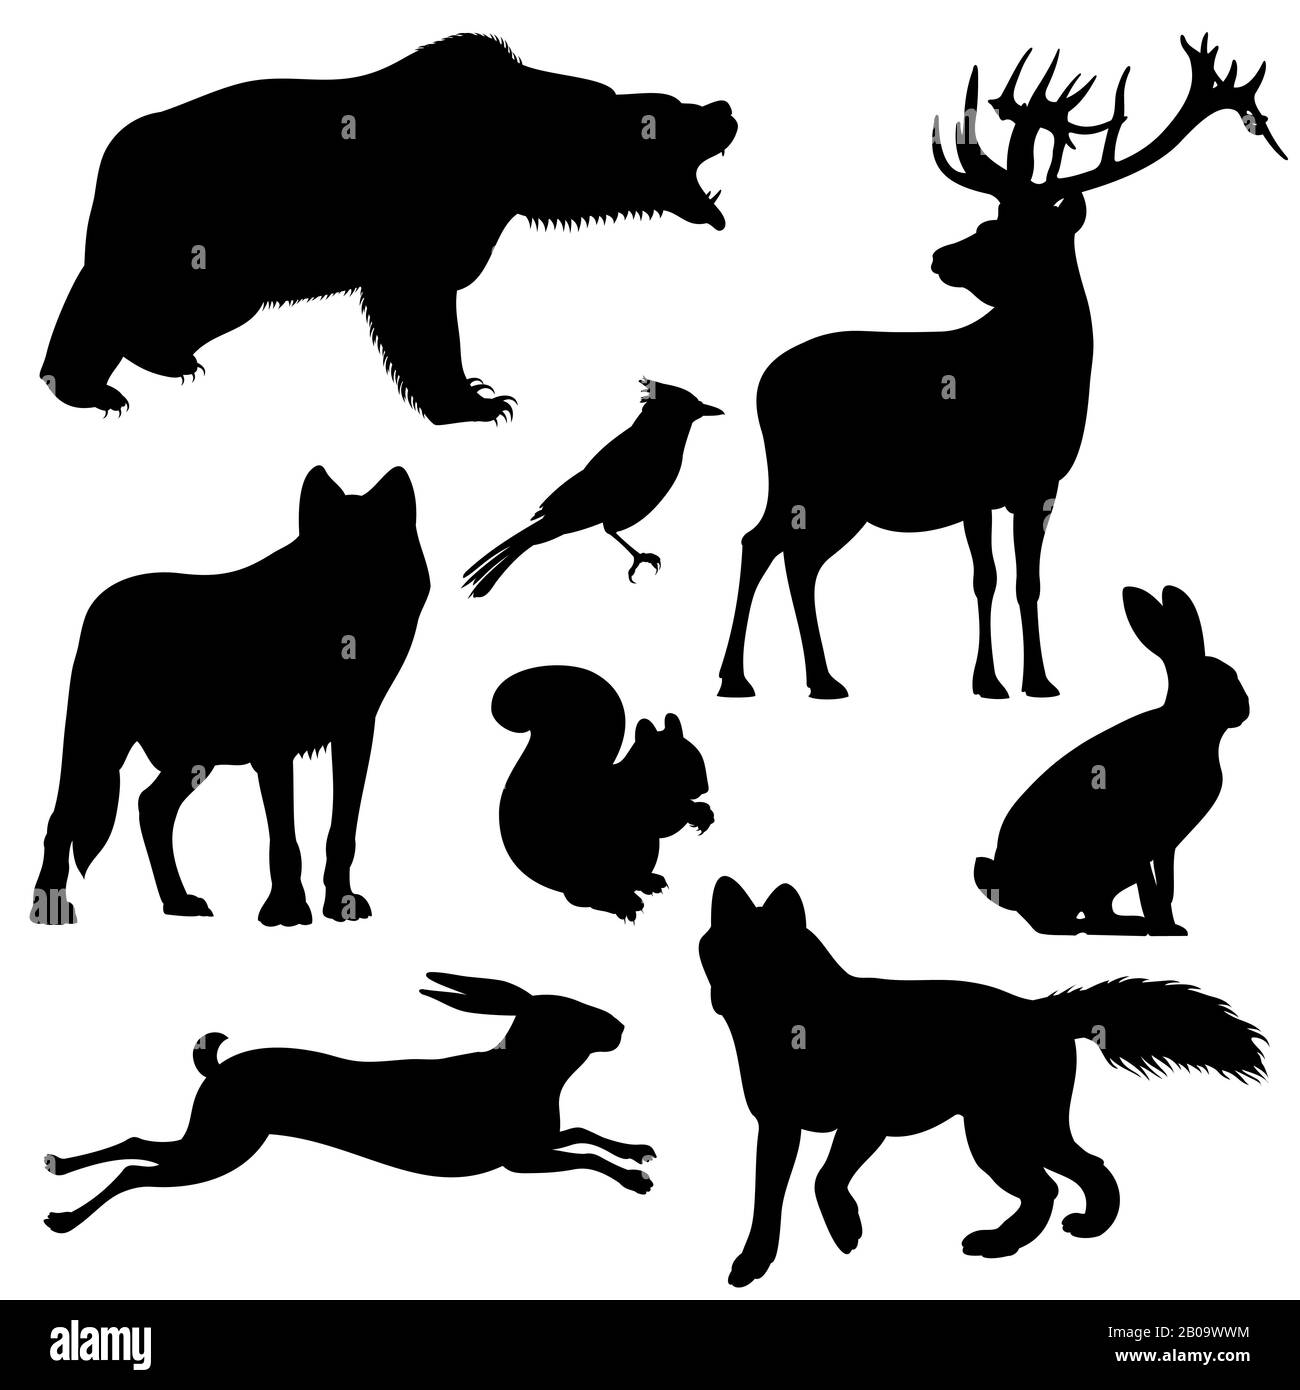 Jeux de silhouettes vectorielles pour animaux forestiers. Mammifère animal prédateur, illustration de l'animal silhouette noire Illustration de Vecteur